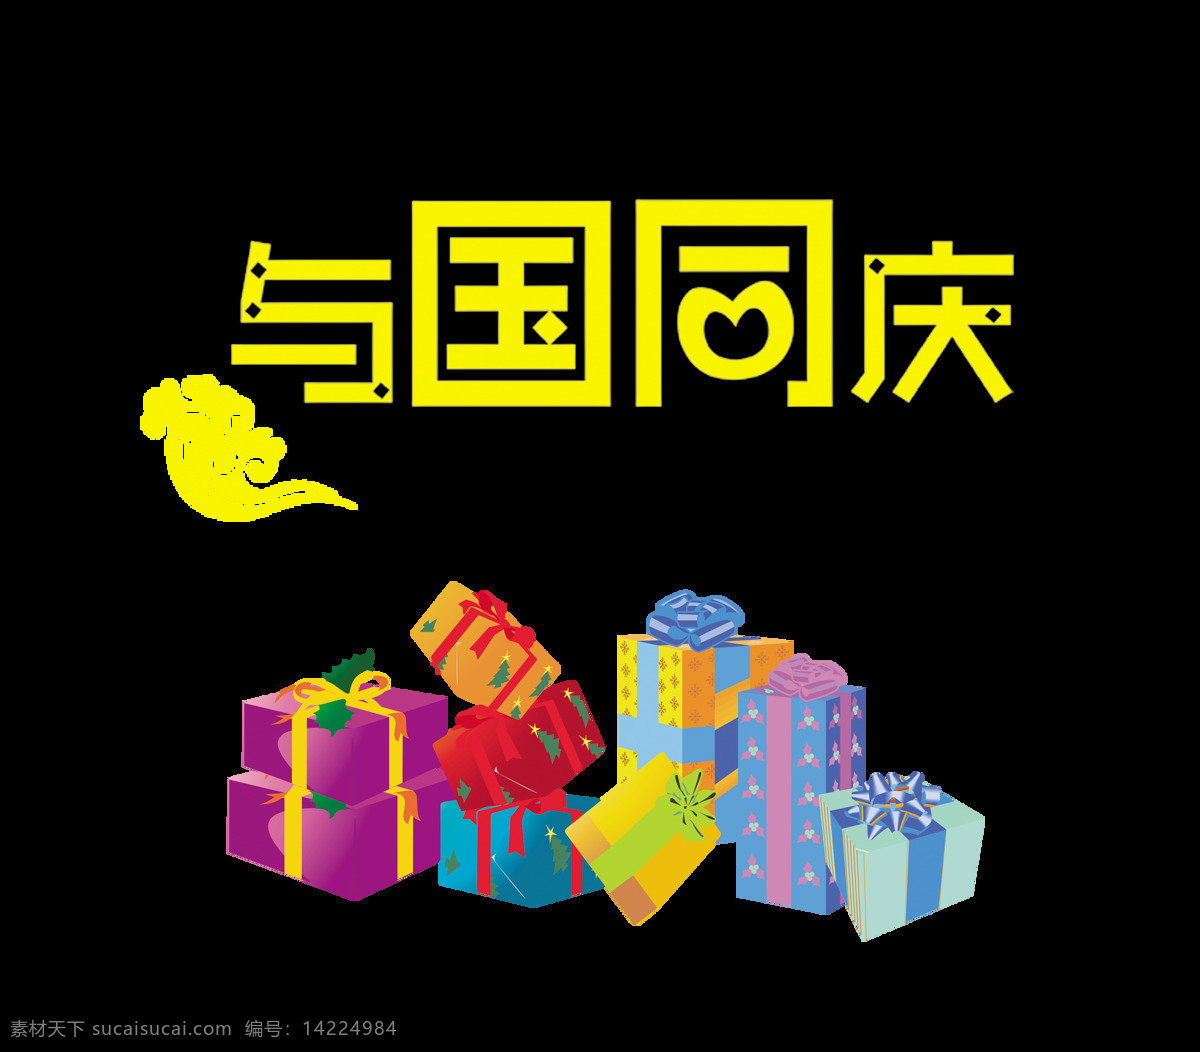 国 同庆 礼物 艺术 字 国庆节 字体 广告 元素 与国同庆礼物 艺术字 海报